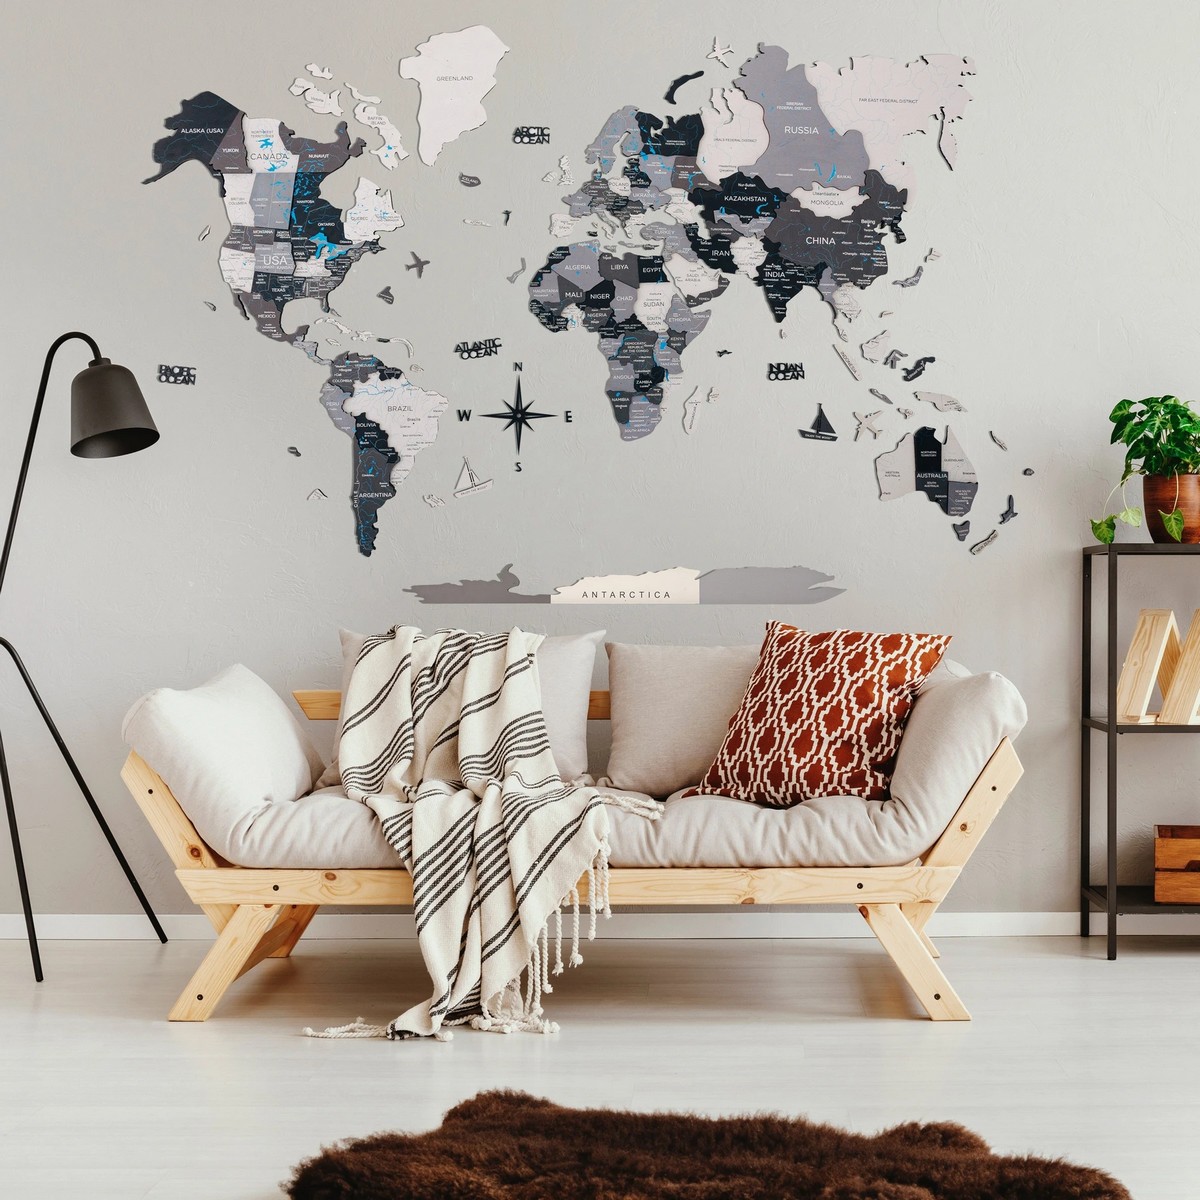 τρισδιάστατος χάρτης του κόσμου στον τοίχο